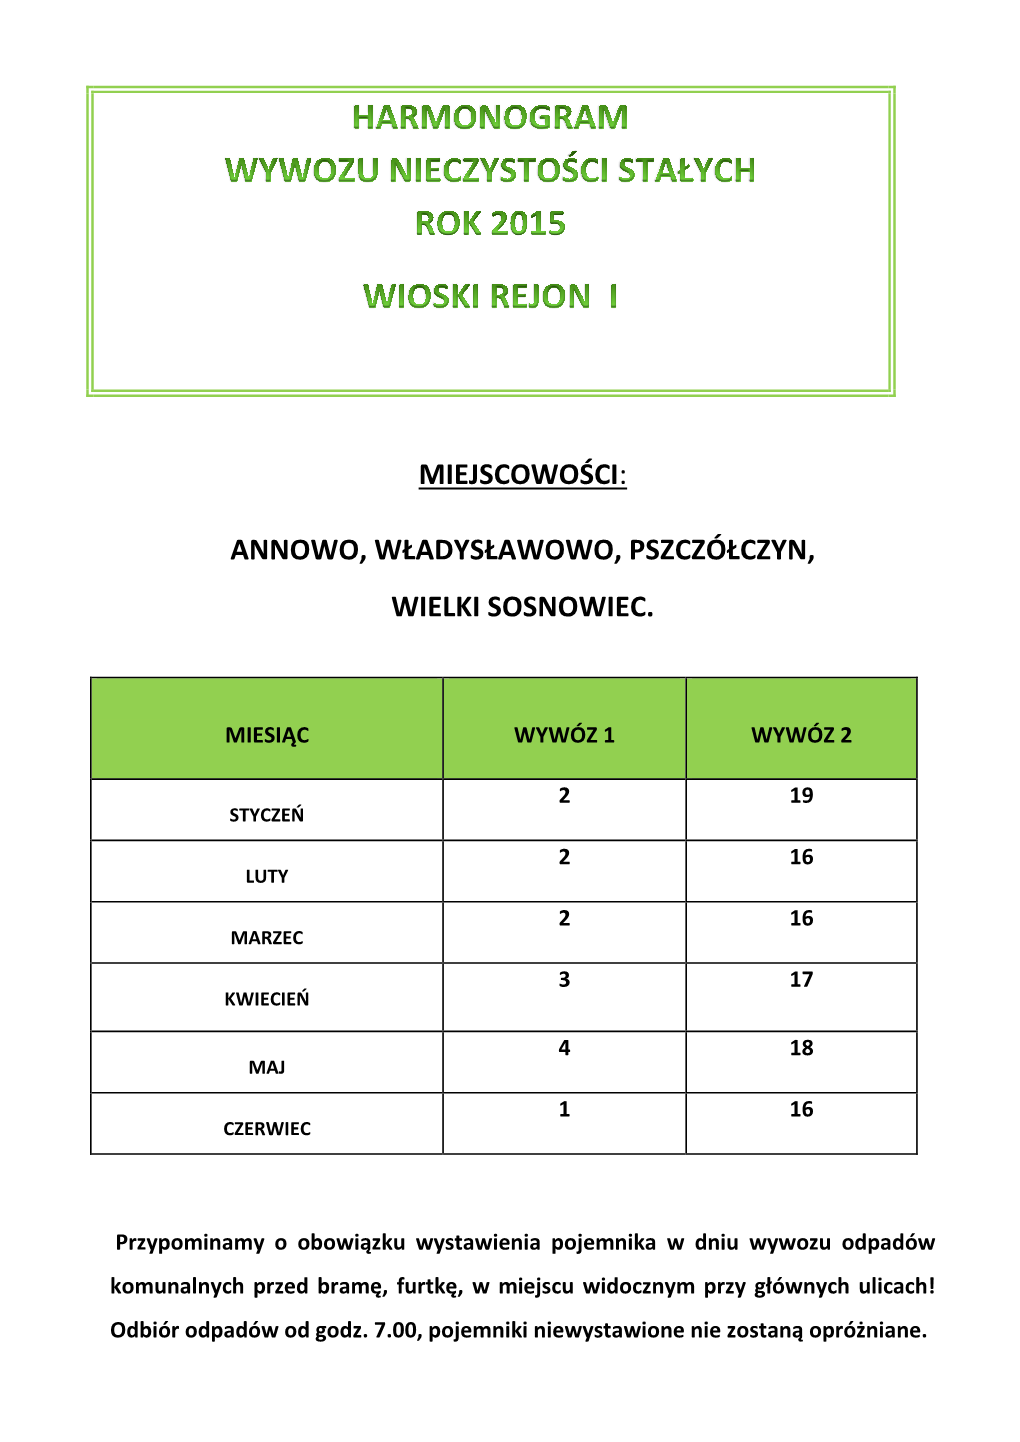 Miejscowości: Annowo, Władysławowo, Pszczółczyn